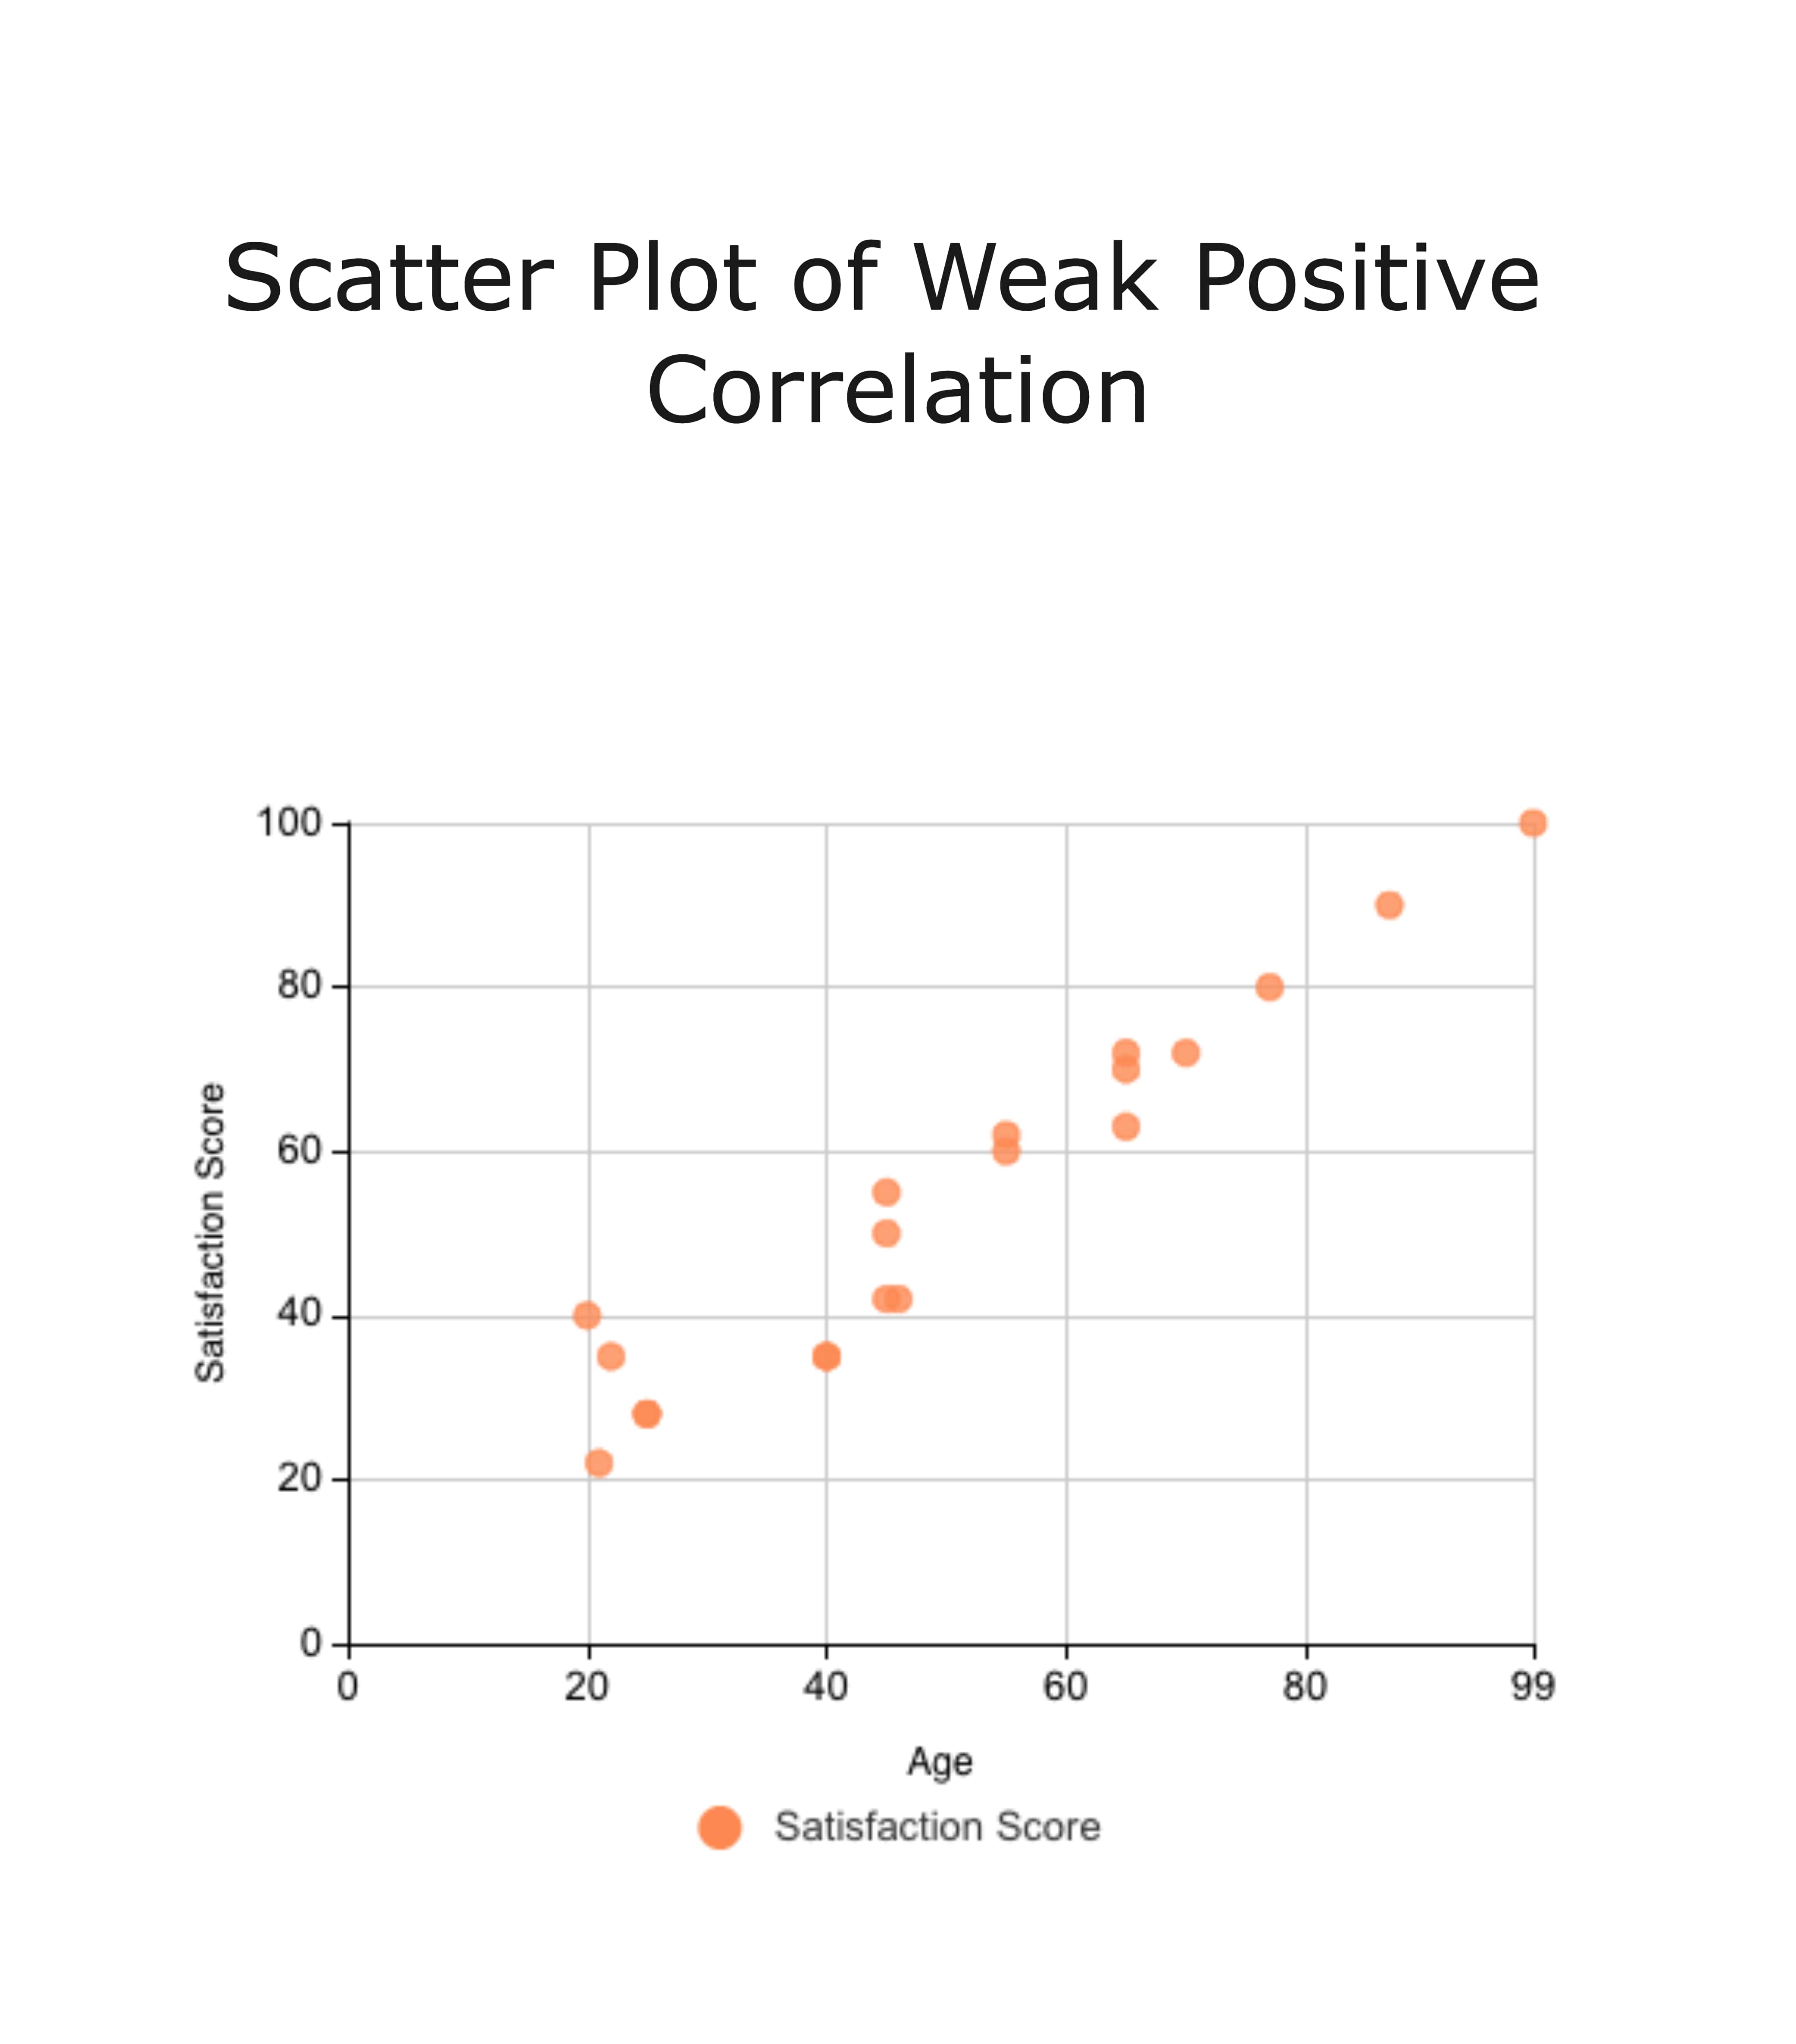 Gráfico de dispersão de correlação positiva fraca